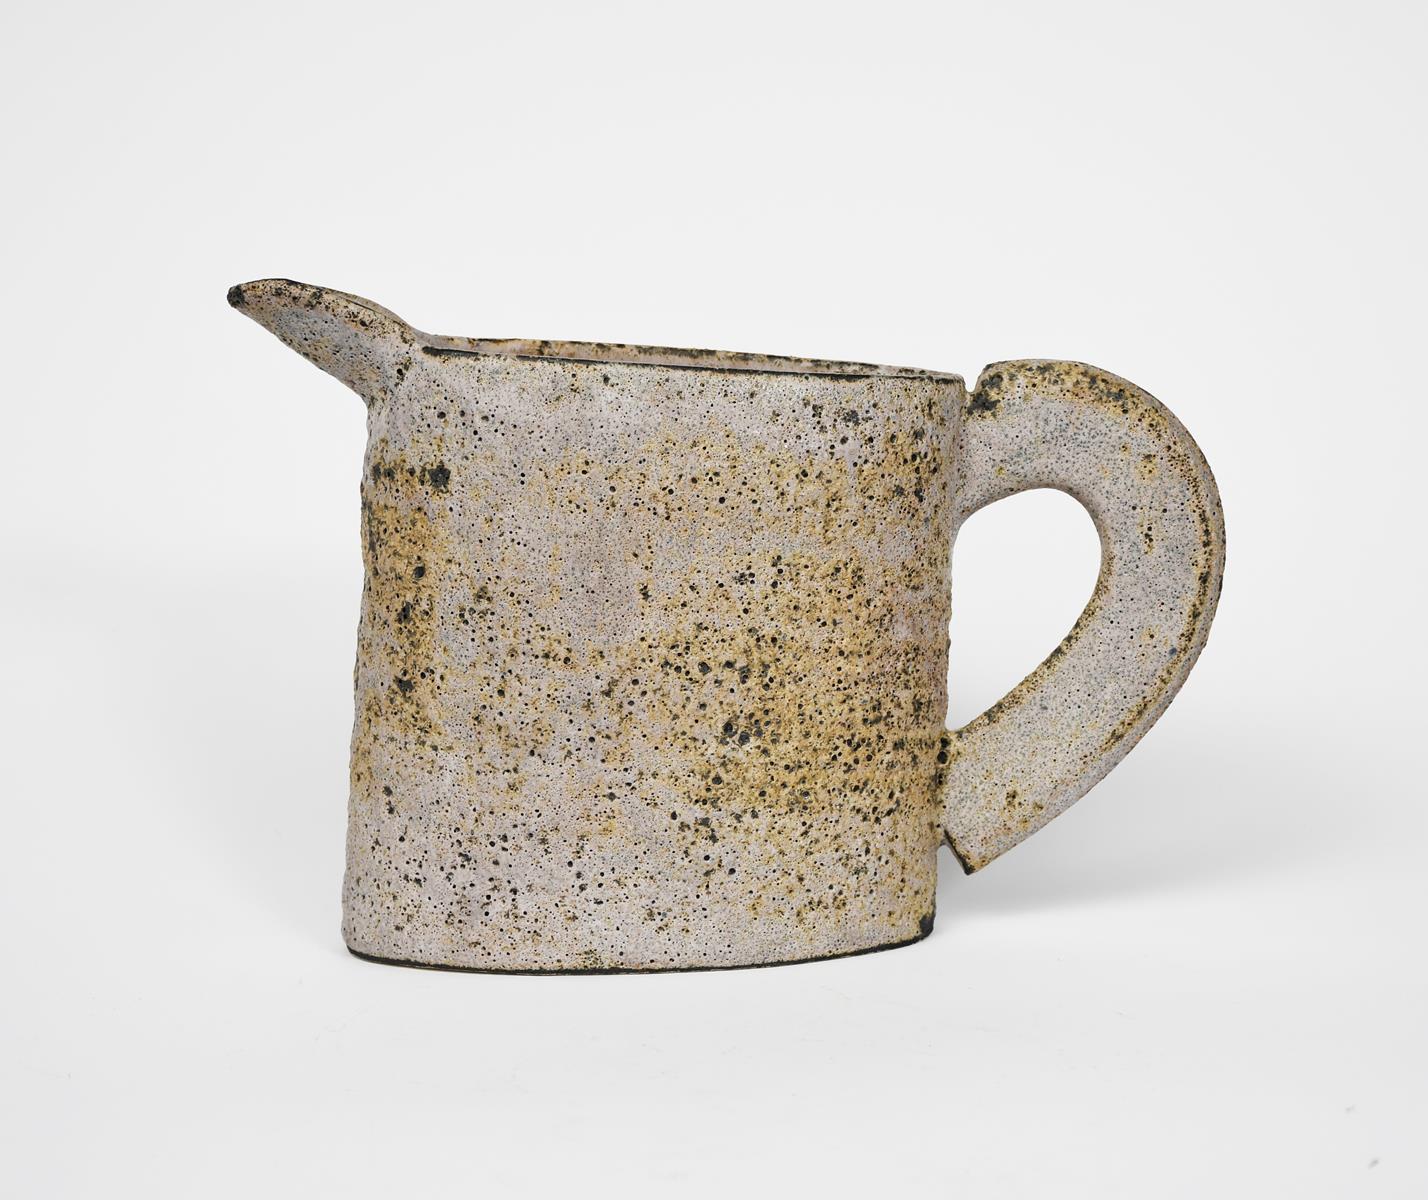 Emmanuel Cooper OBE (1938-2012) stoneware jug form pitted lavender on tan impressed seal mark - Image 2 of 3